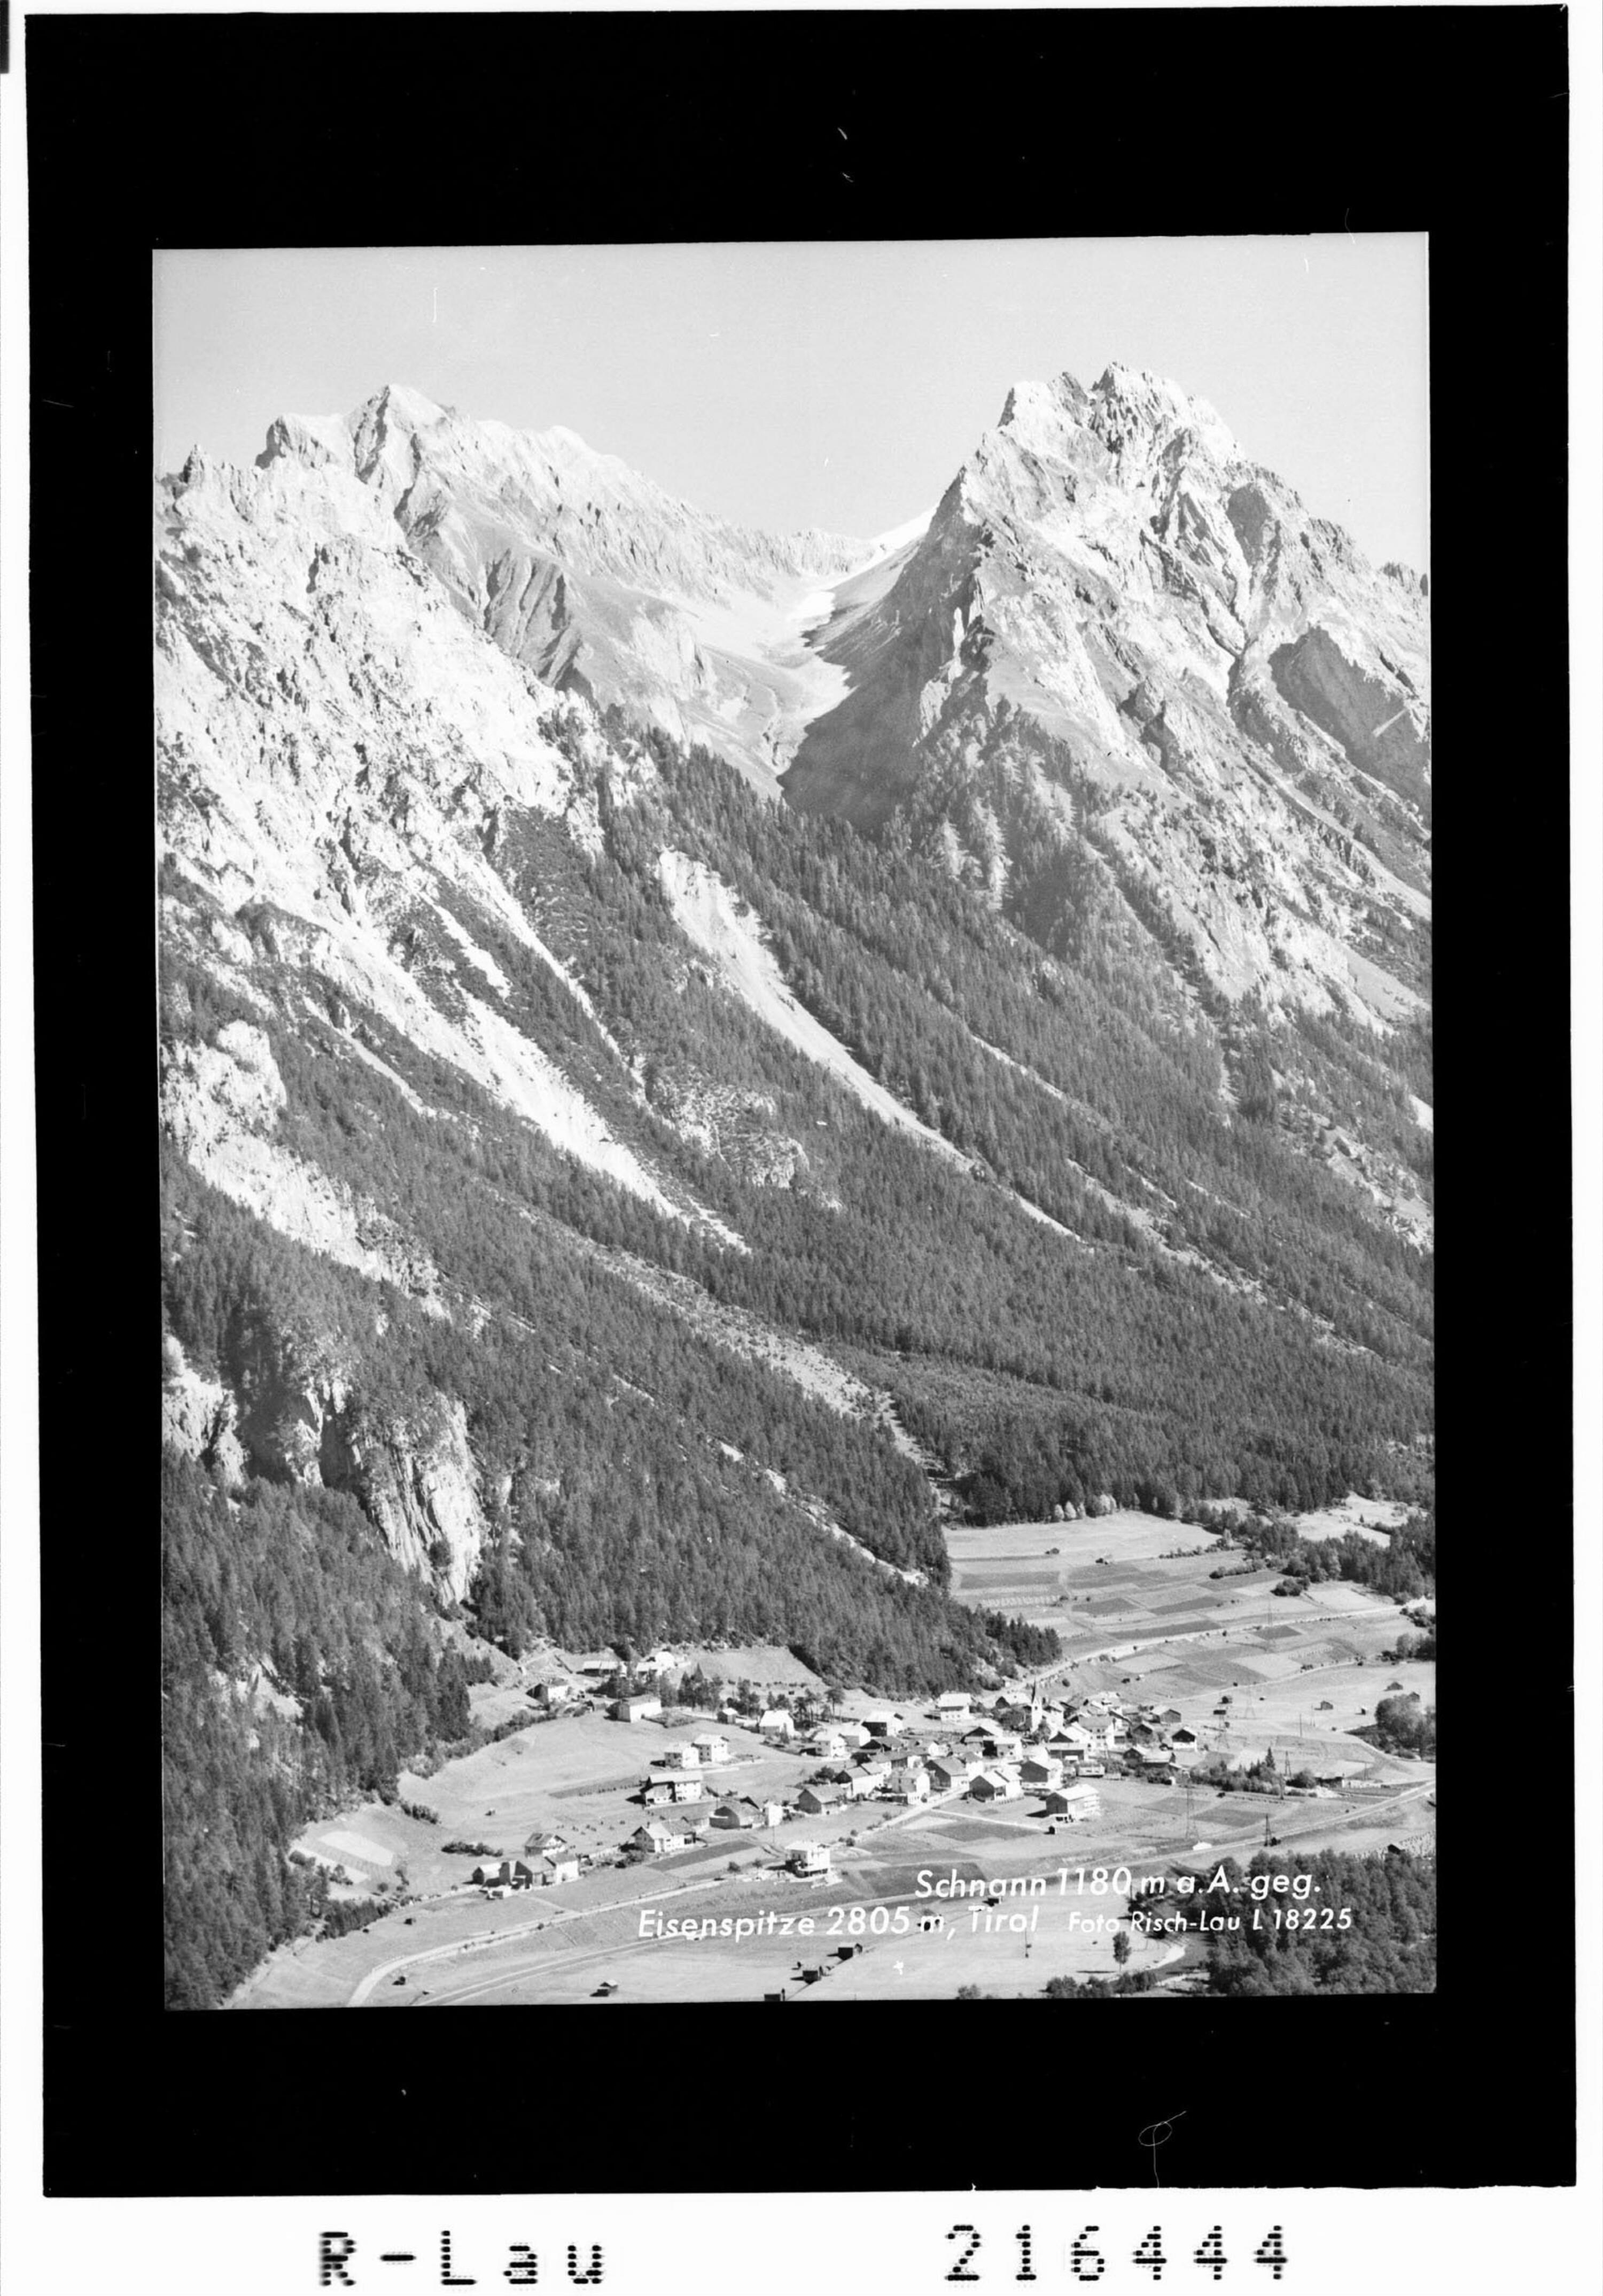 Schnann 1180 m gegen Eisenspitze 2805 m, Tirol></div>


    <hr>
    <div class=